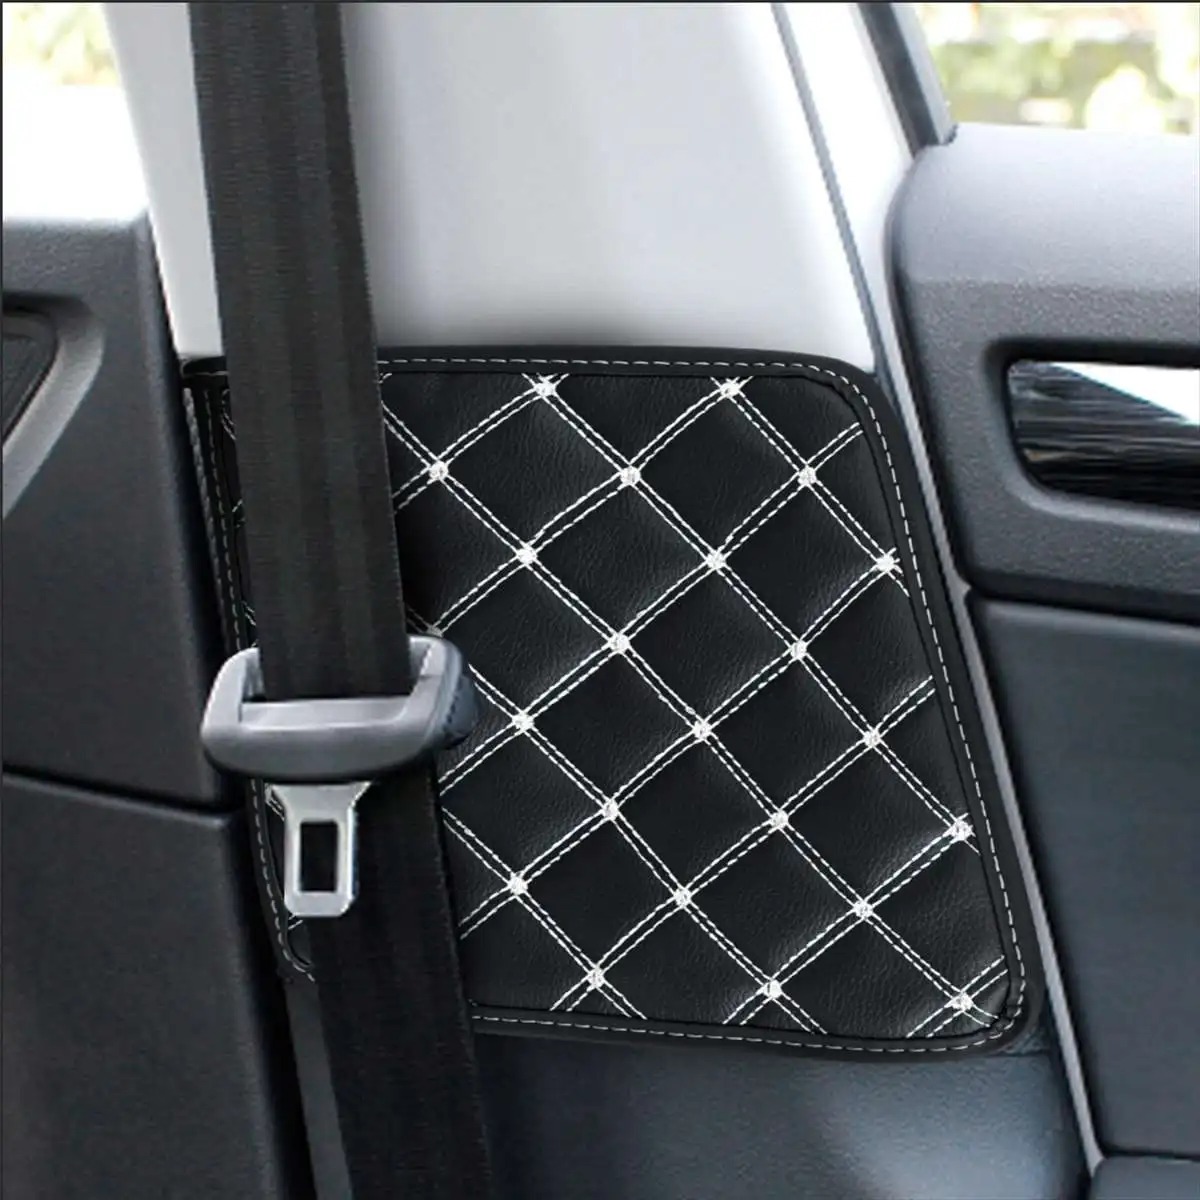 2X автомобильный ремень безопасности защитный крэш-колодка коврик покрытие автомобиля Стайлинг Авто интерьерные аксессуары для Skoda Kodiaq - Название цвета: White Line